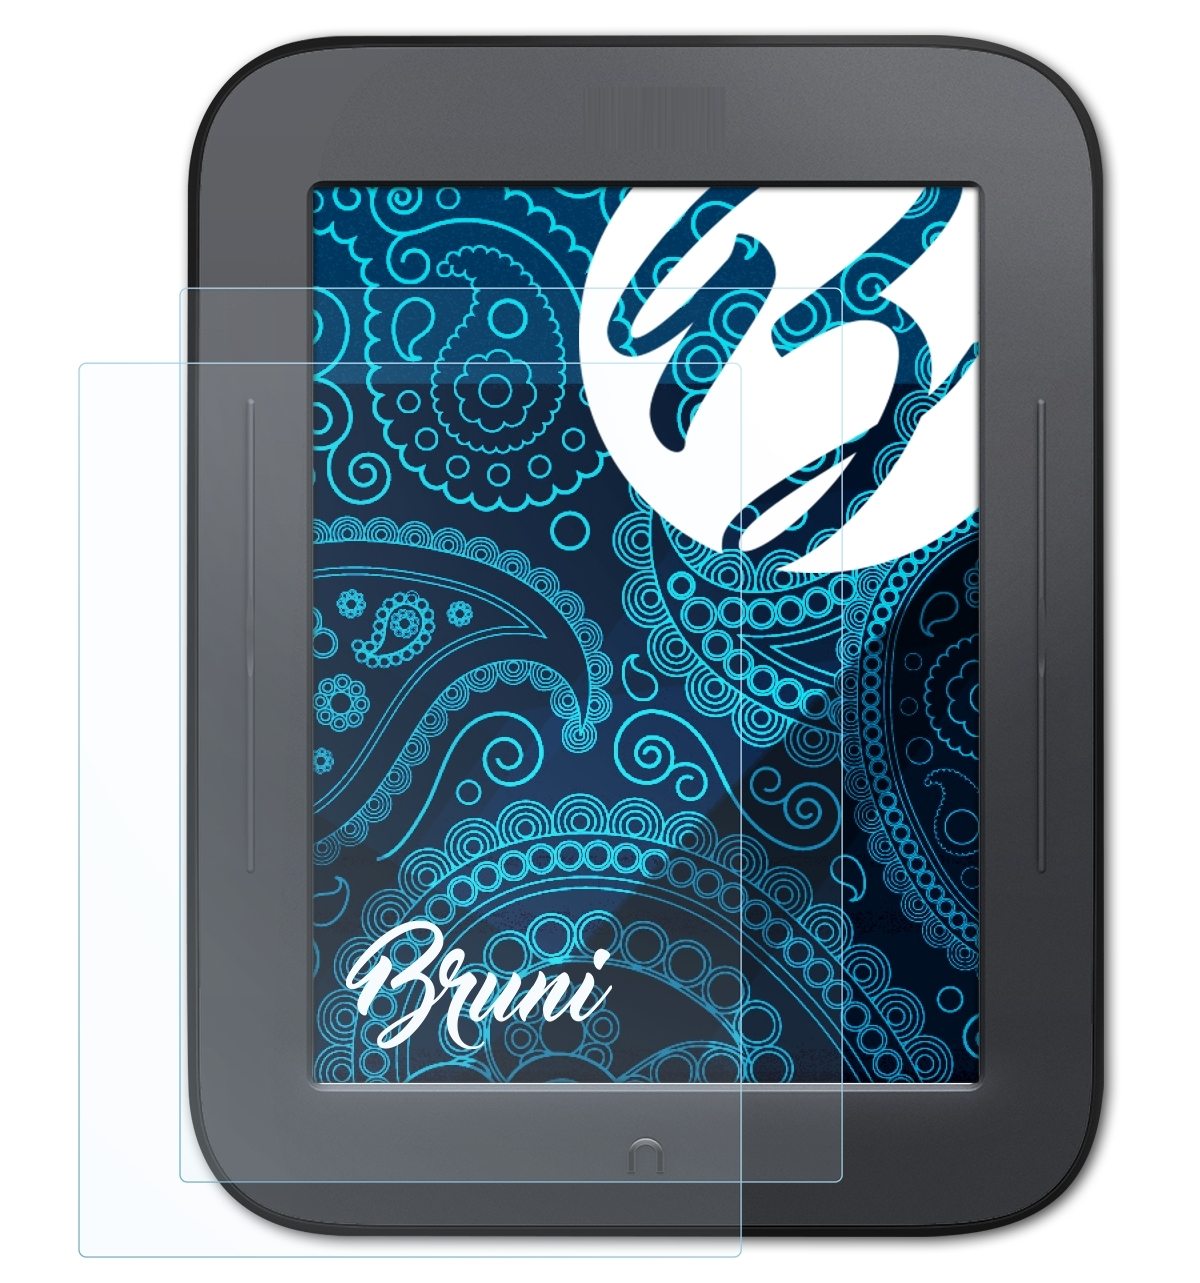 & Touch) BRUNI NOOK Schutzfolie(für Basics-Clear Barnes 2x Noble Simple